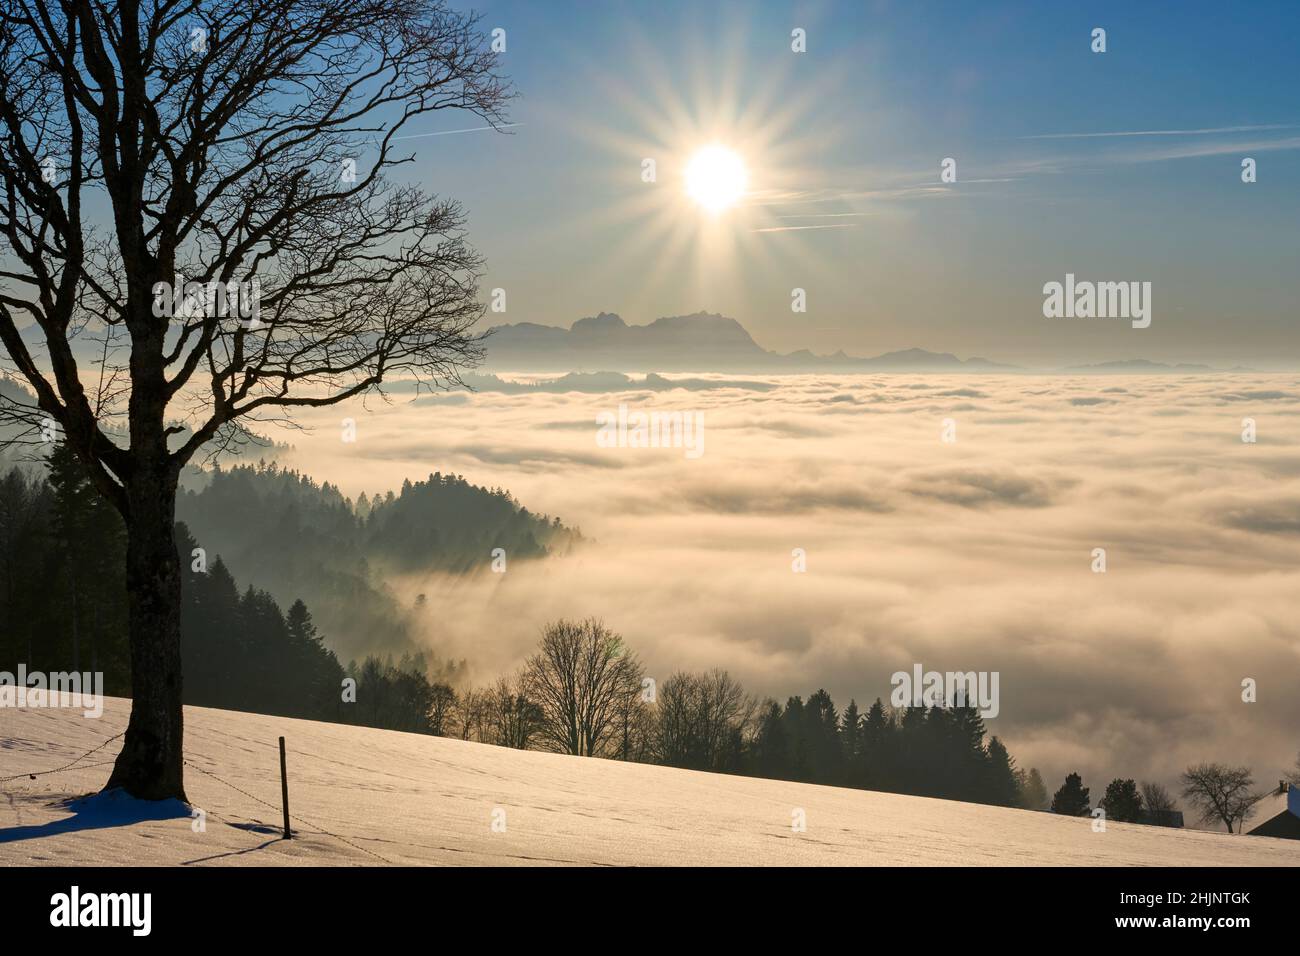 Puesta de sol en la nevada zona de Bregenzer Wald de Vorarlberg, Austria con espectaculares vistas sobre el Monte Sentis sobre un mar de niebla, Suiza, Sulzberg, Austr Foto de stock